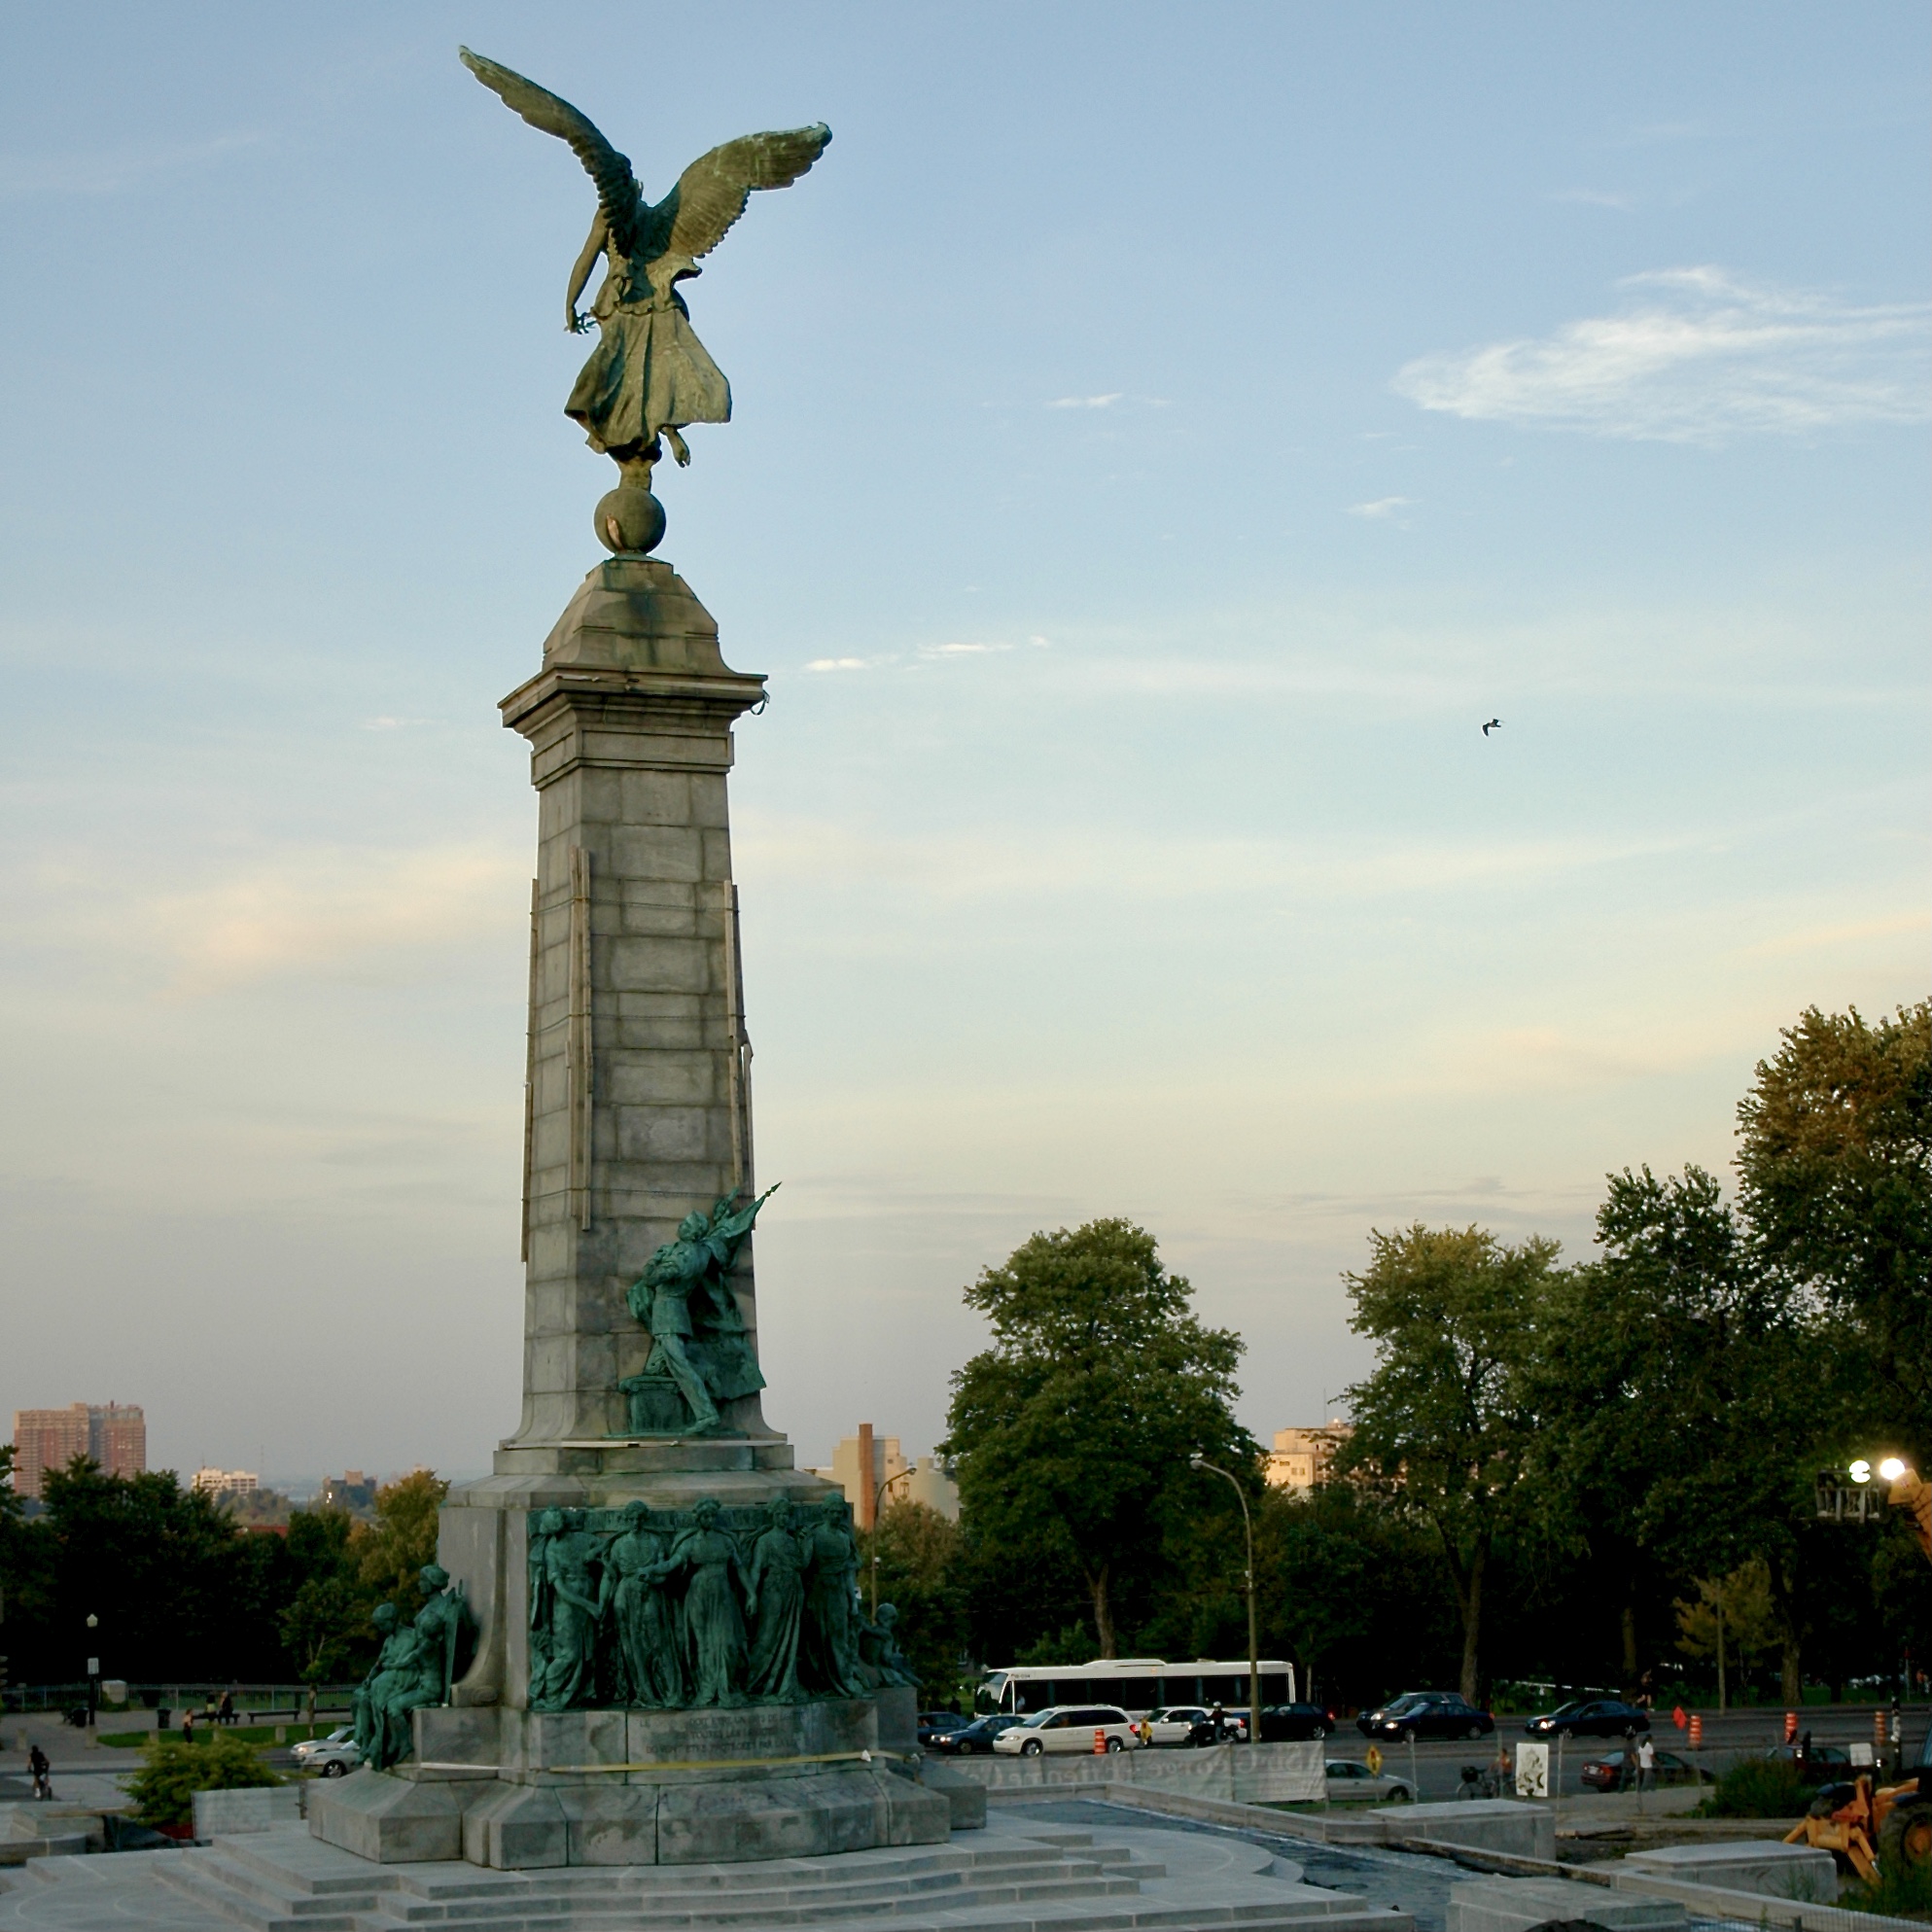 Vue en plan du monument Sir George-Étienne Cartier de Montréal